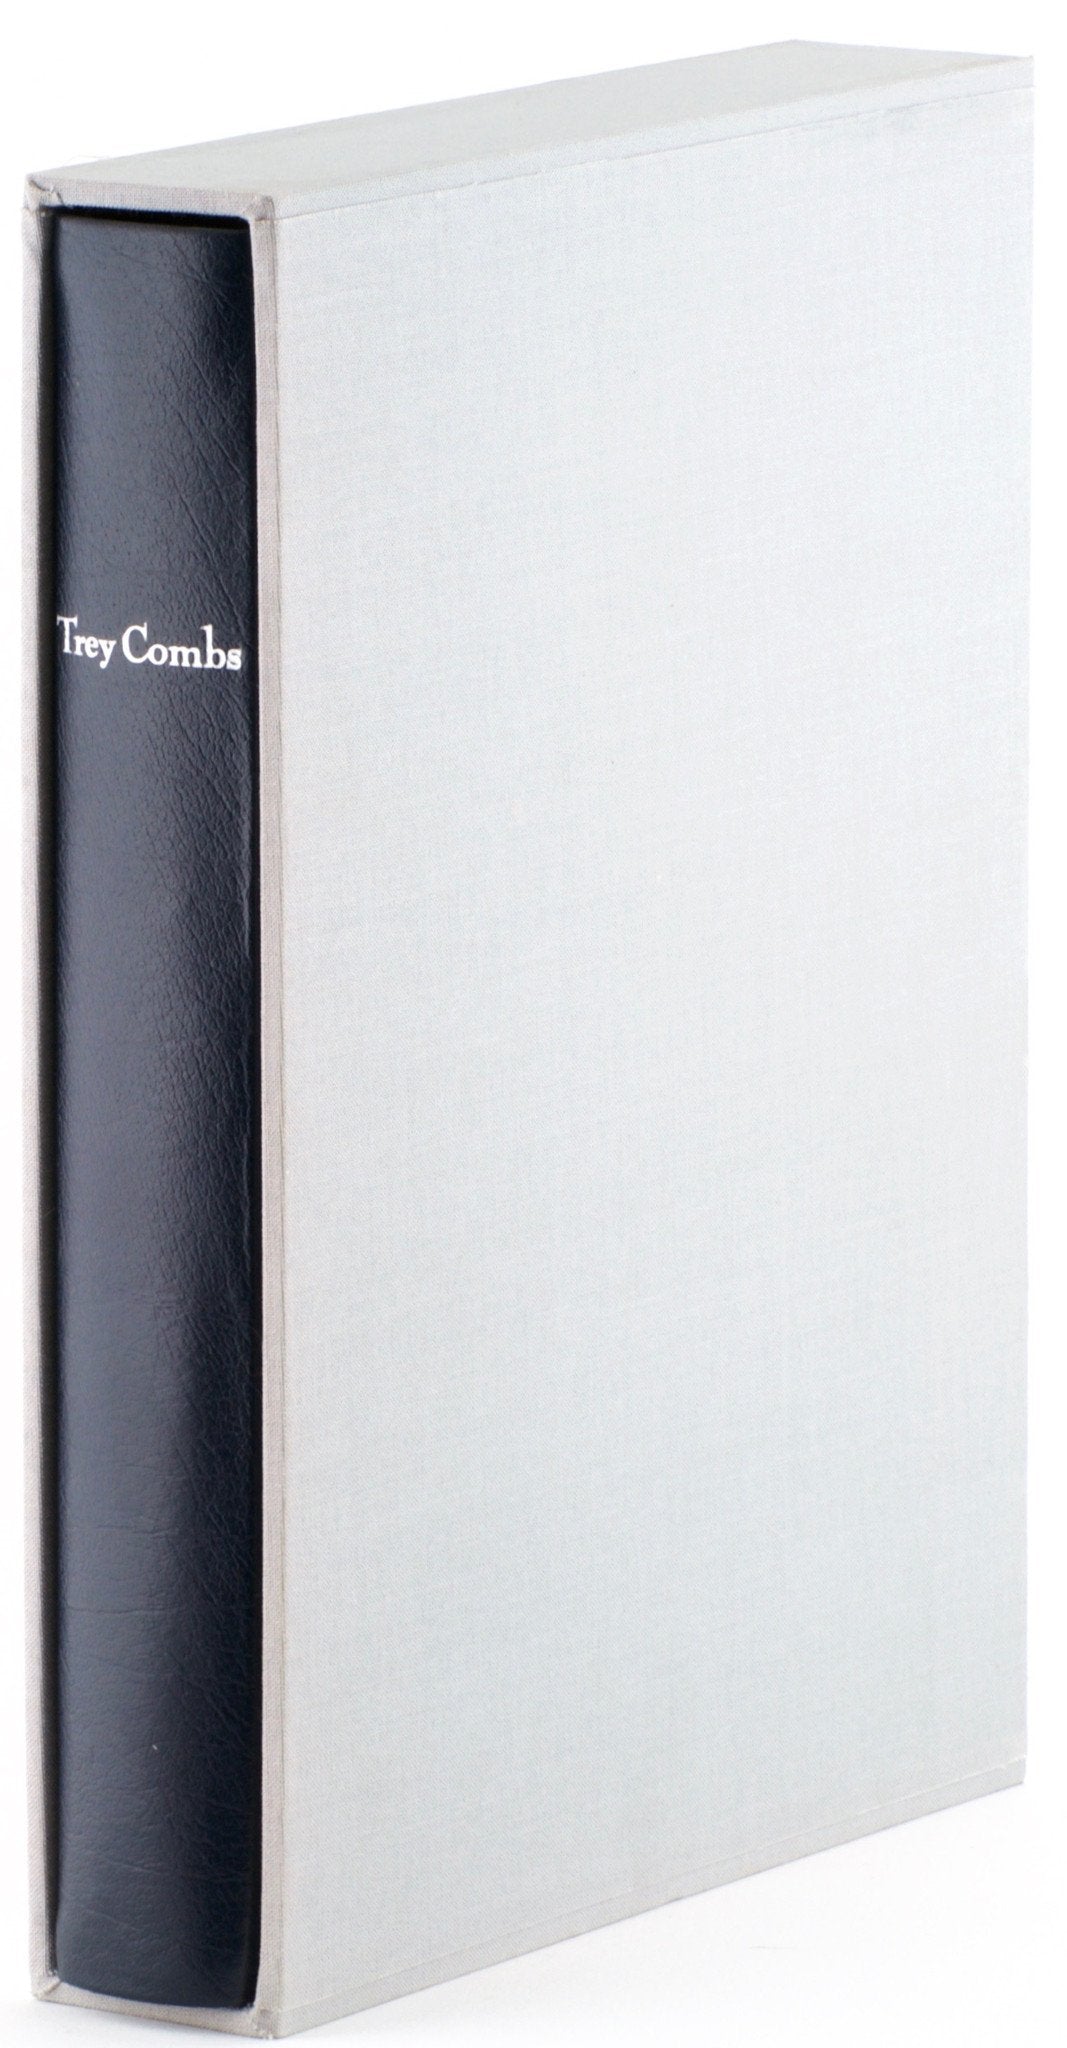 Combs, Trey - Steelhead Fly Fishing (Limited Edition) - Spinoza Rod Company